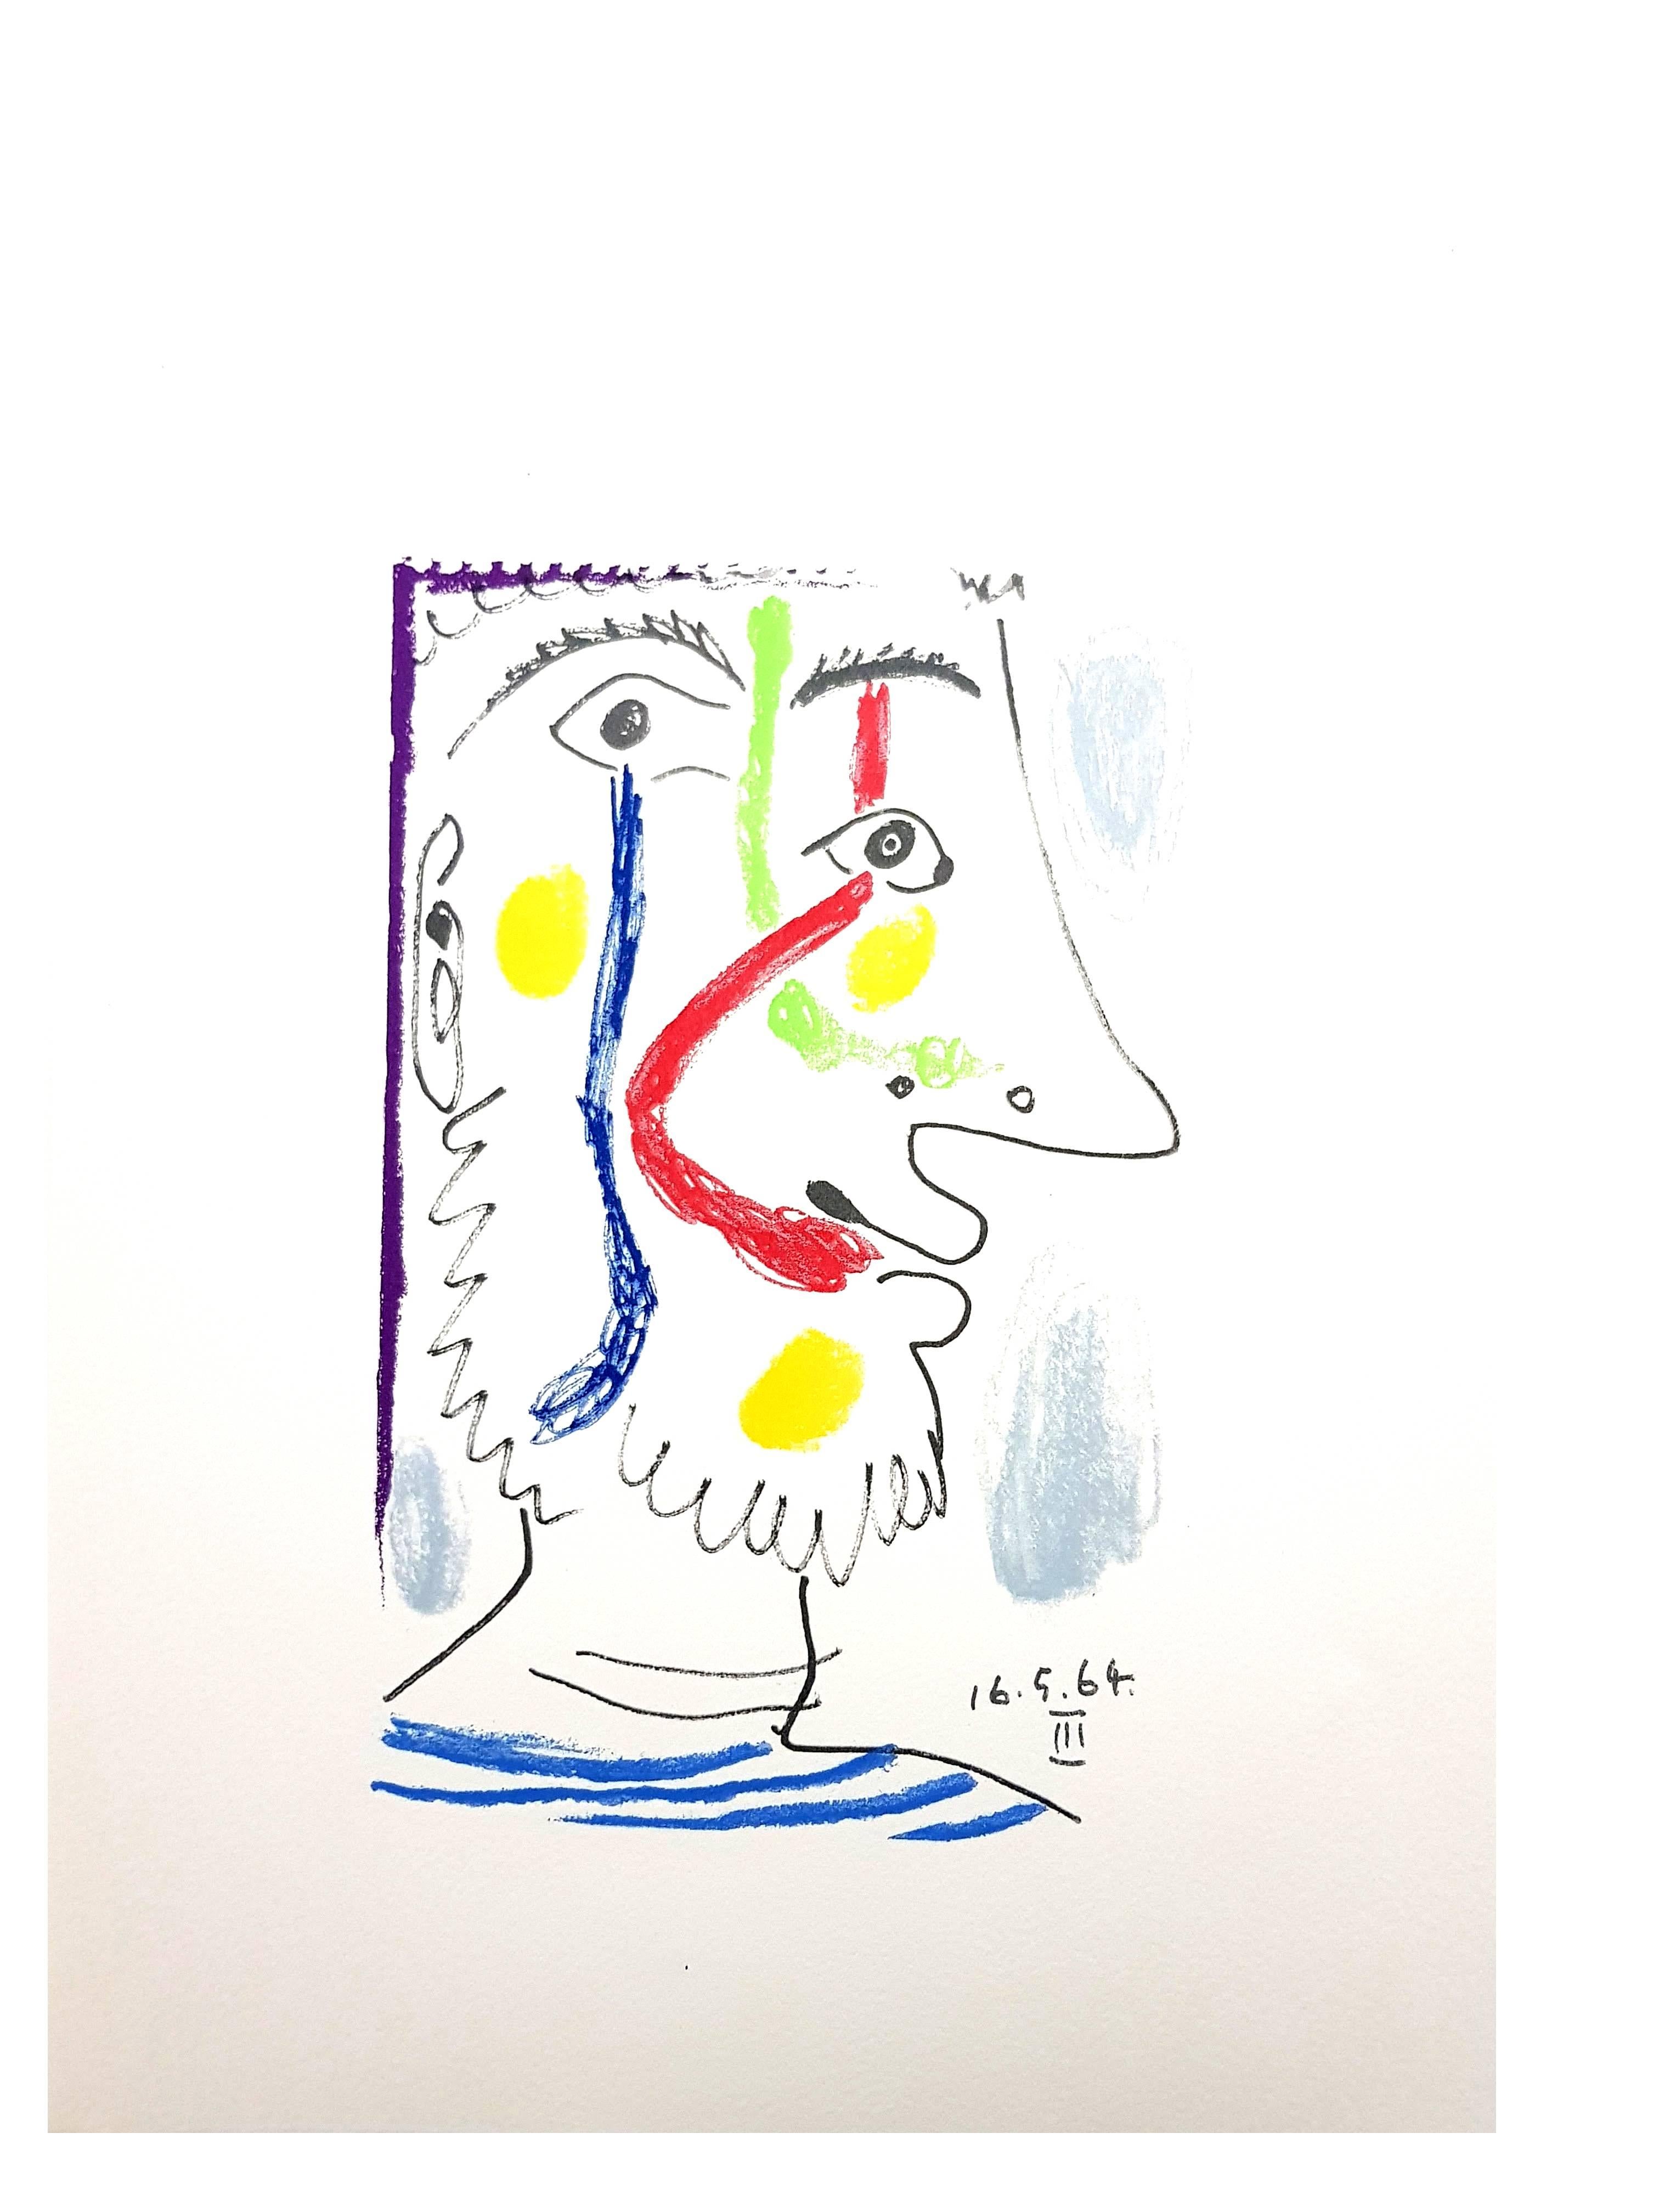 Artiste : Pablo Picasso (après)
Support : lithographie, papier Arches
Portfolio : Le Goût de Bonheur
Année : 1970
Édition : Total de 1998 exemplaires (666 chacun en allemand, français et anglais)
Taille de la feuille : 13